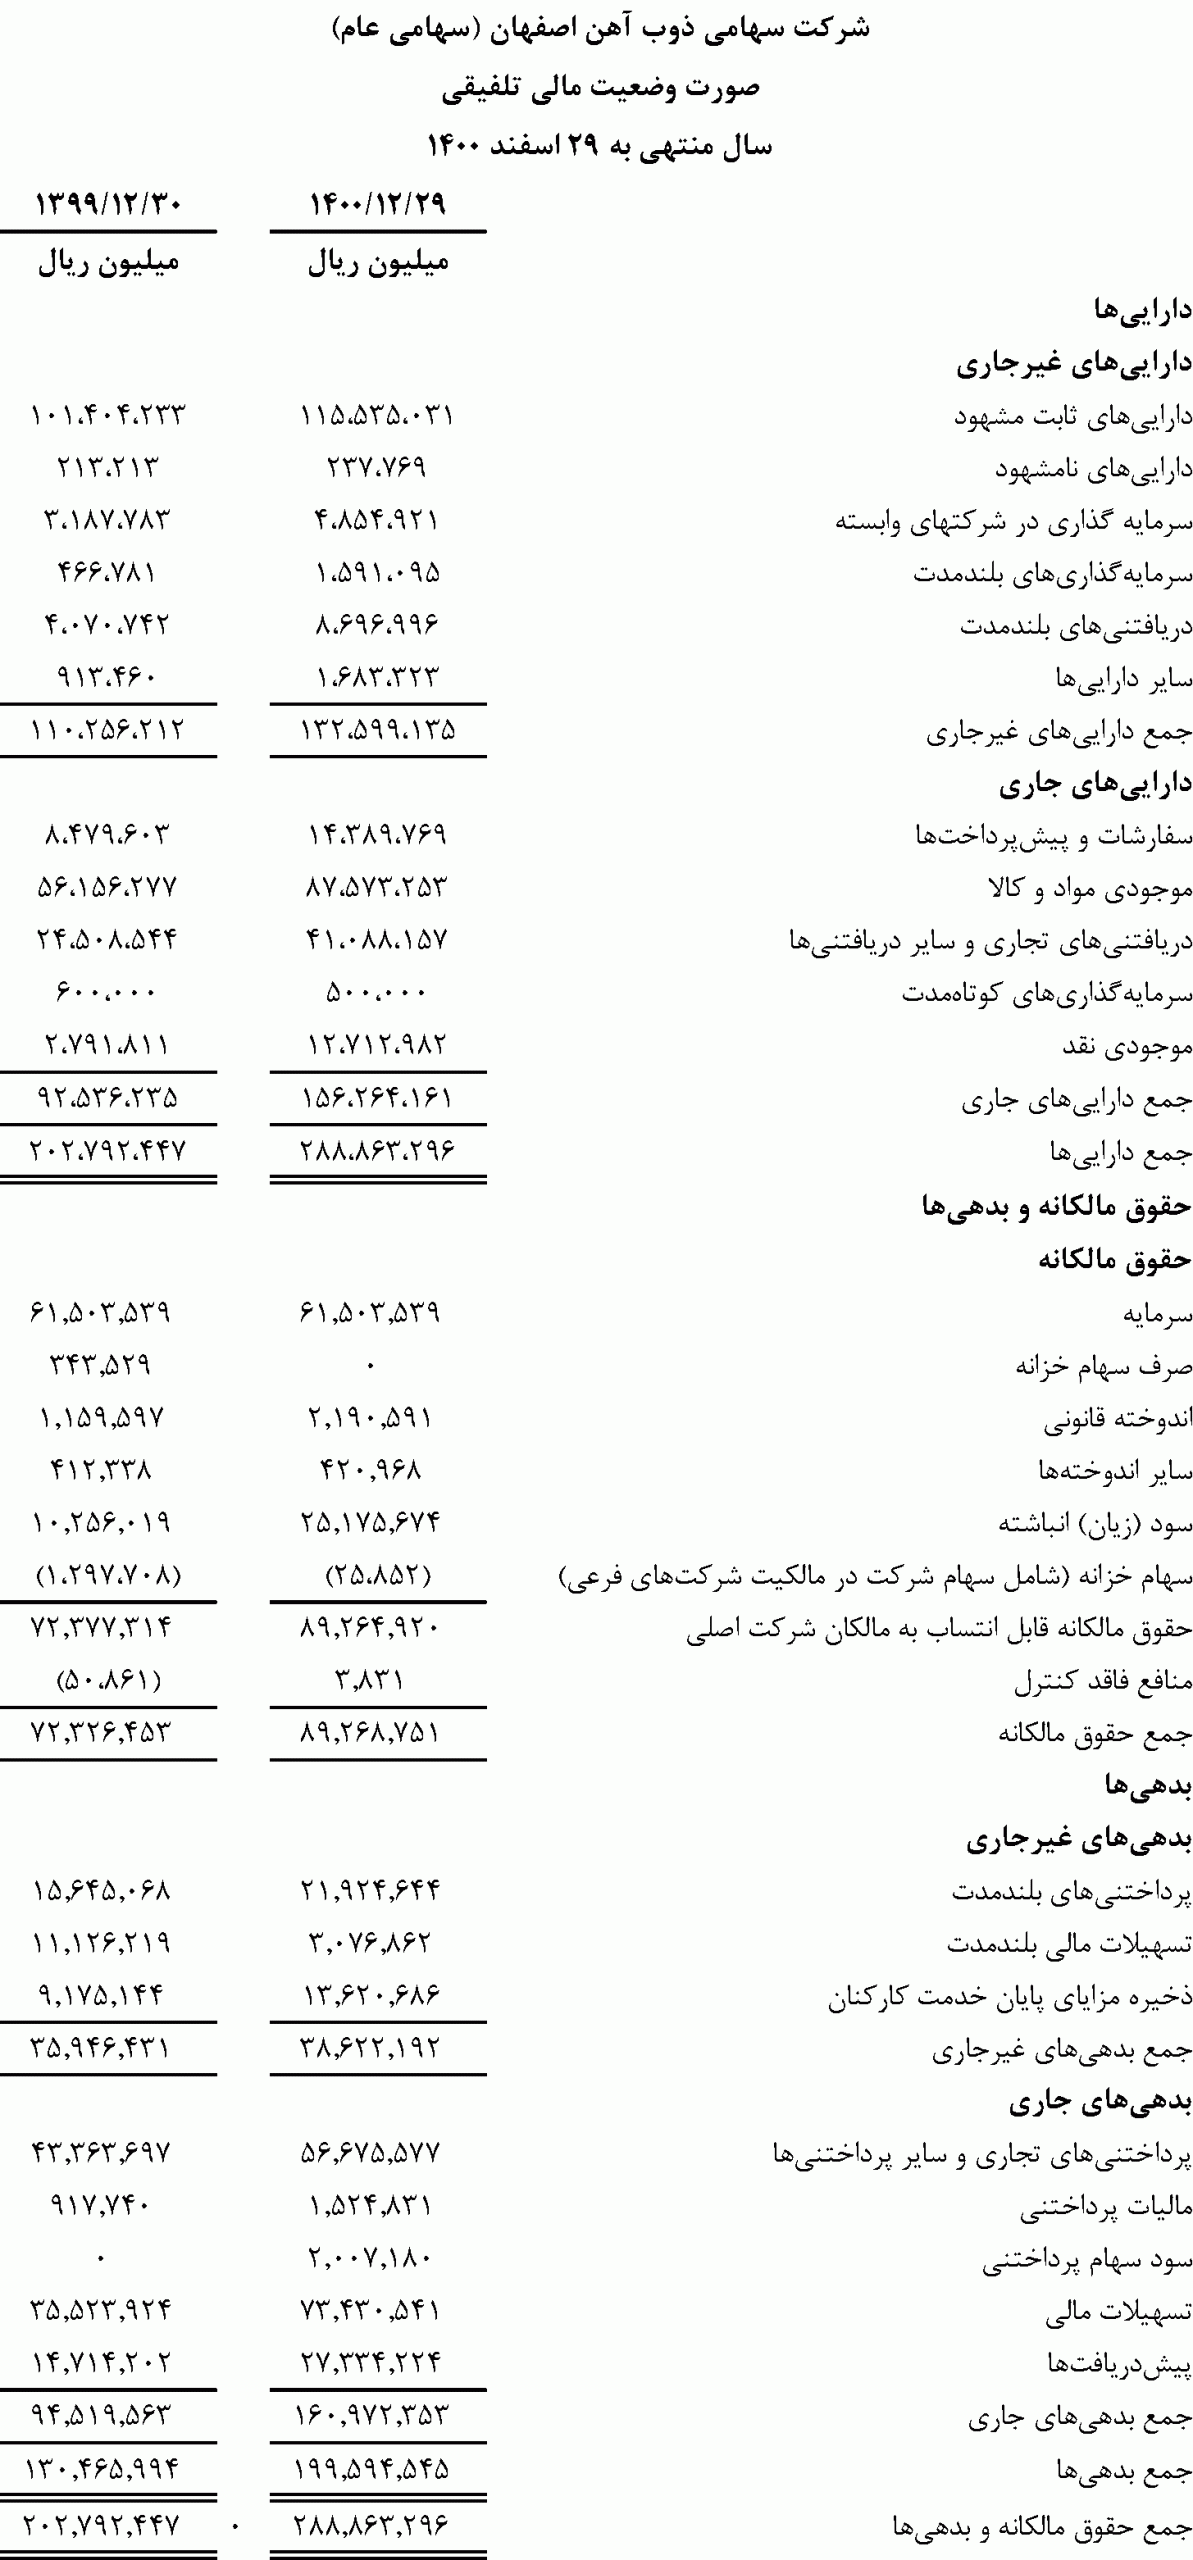 صورت وضعیت مالی شرکت ذوب آهن اصفهان